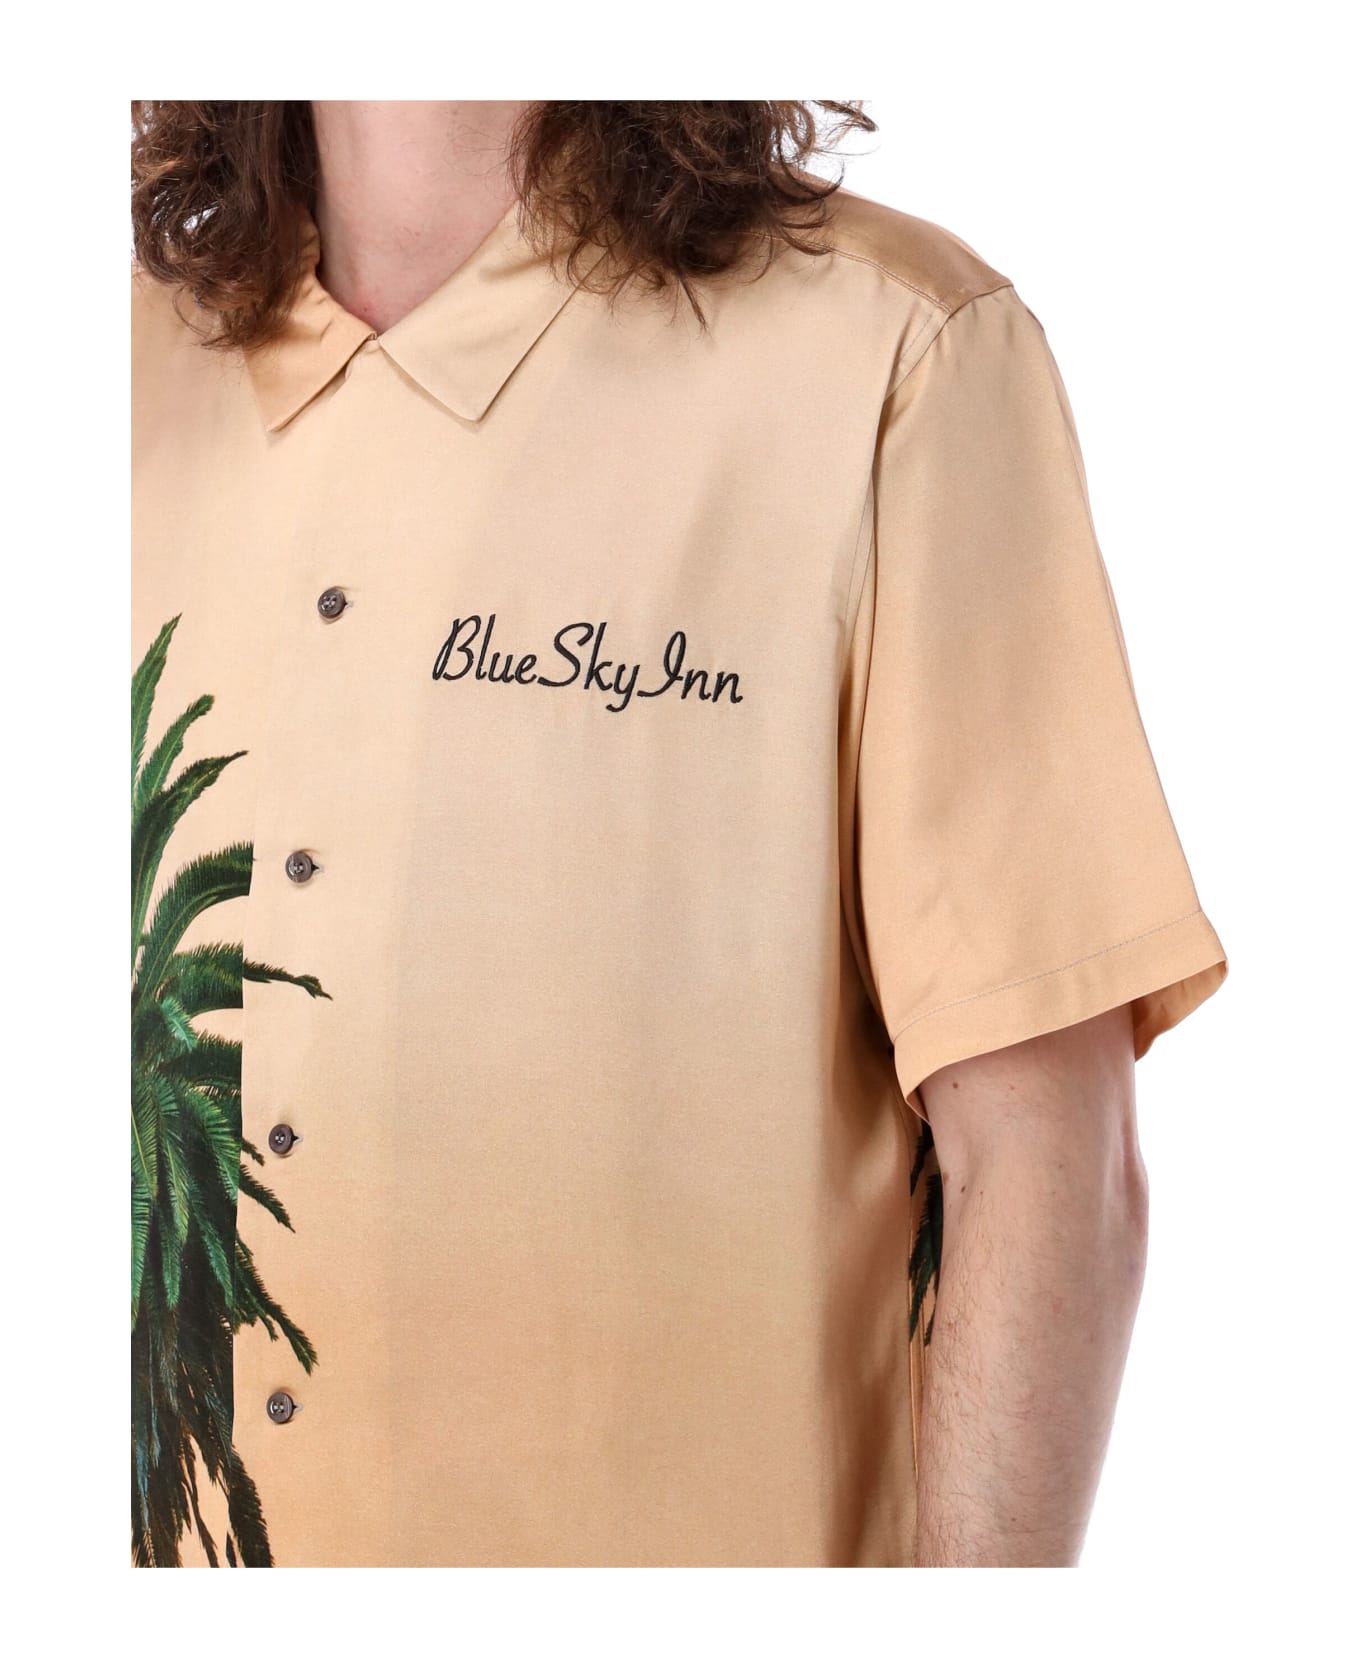 Blue Sky Inn Royal Palm Shirt - ROYAL PALM